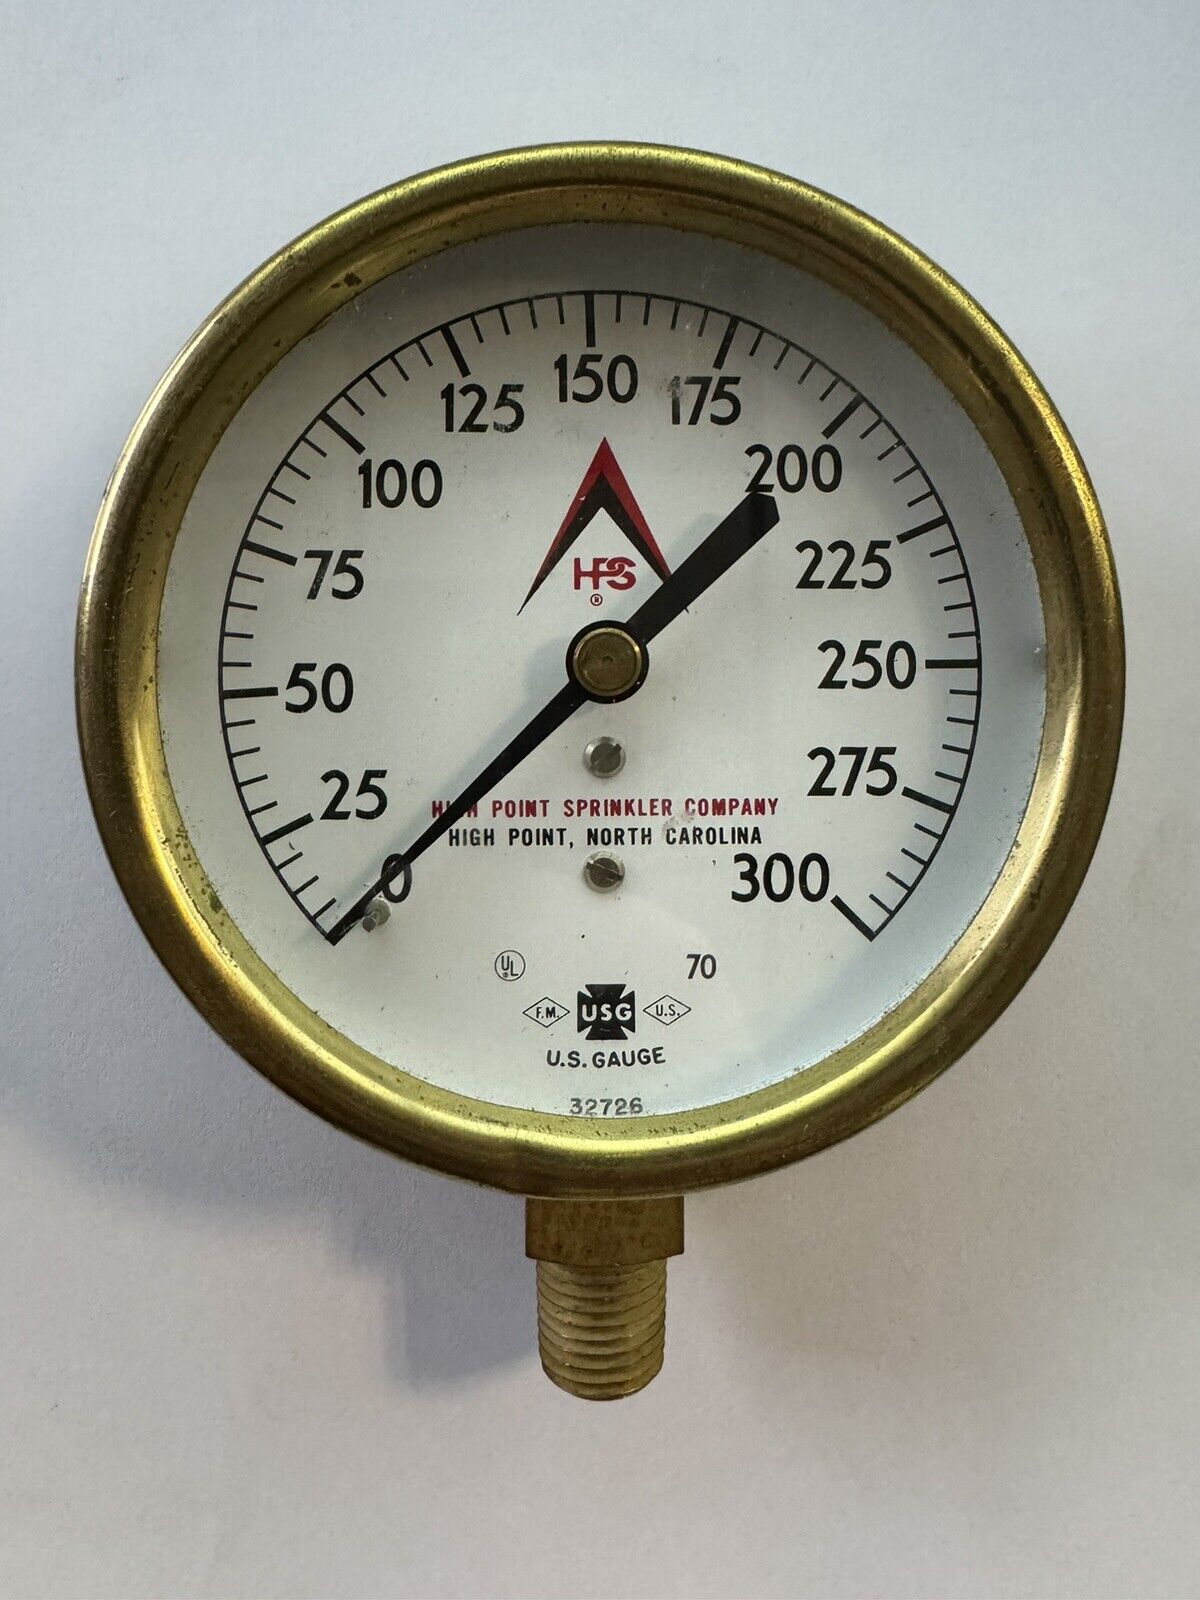 Rare Vintage Brass High Point Sprinkler Company Sprinkler Water Pressure Gauge